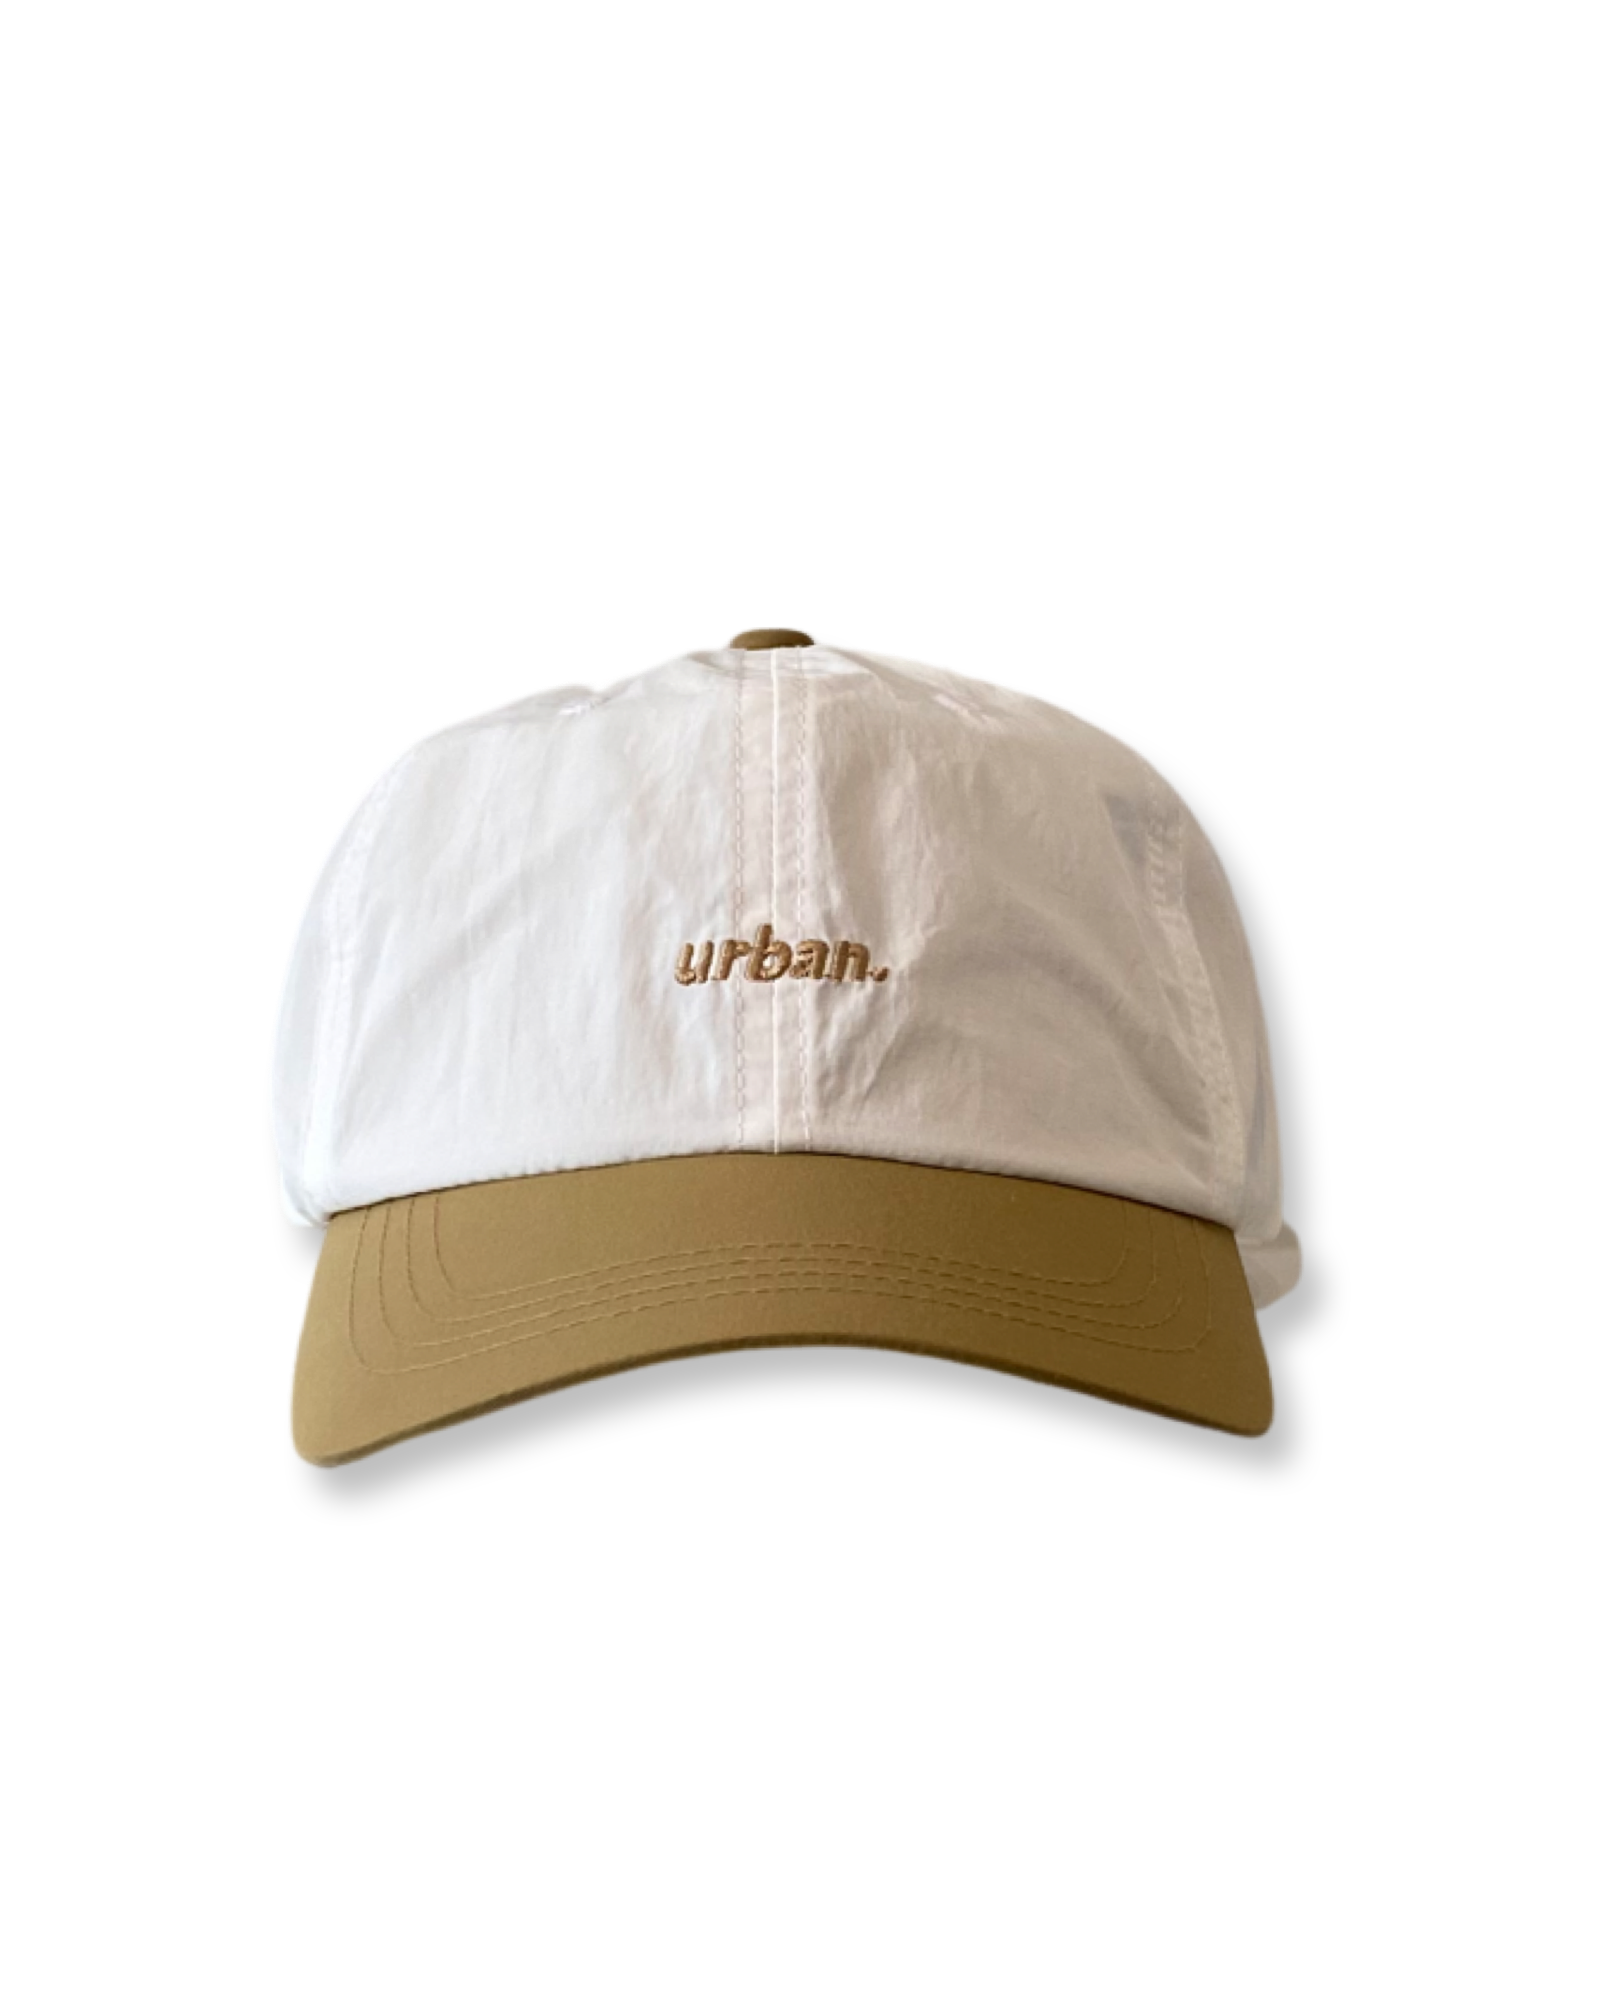 Urban Cap - Beige